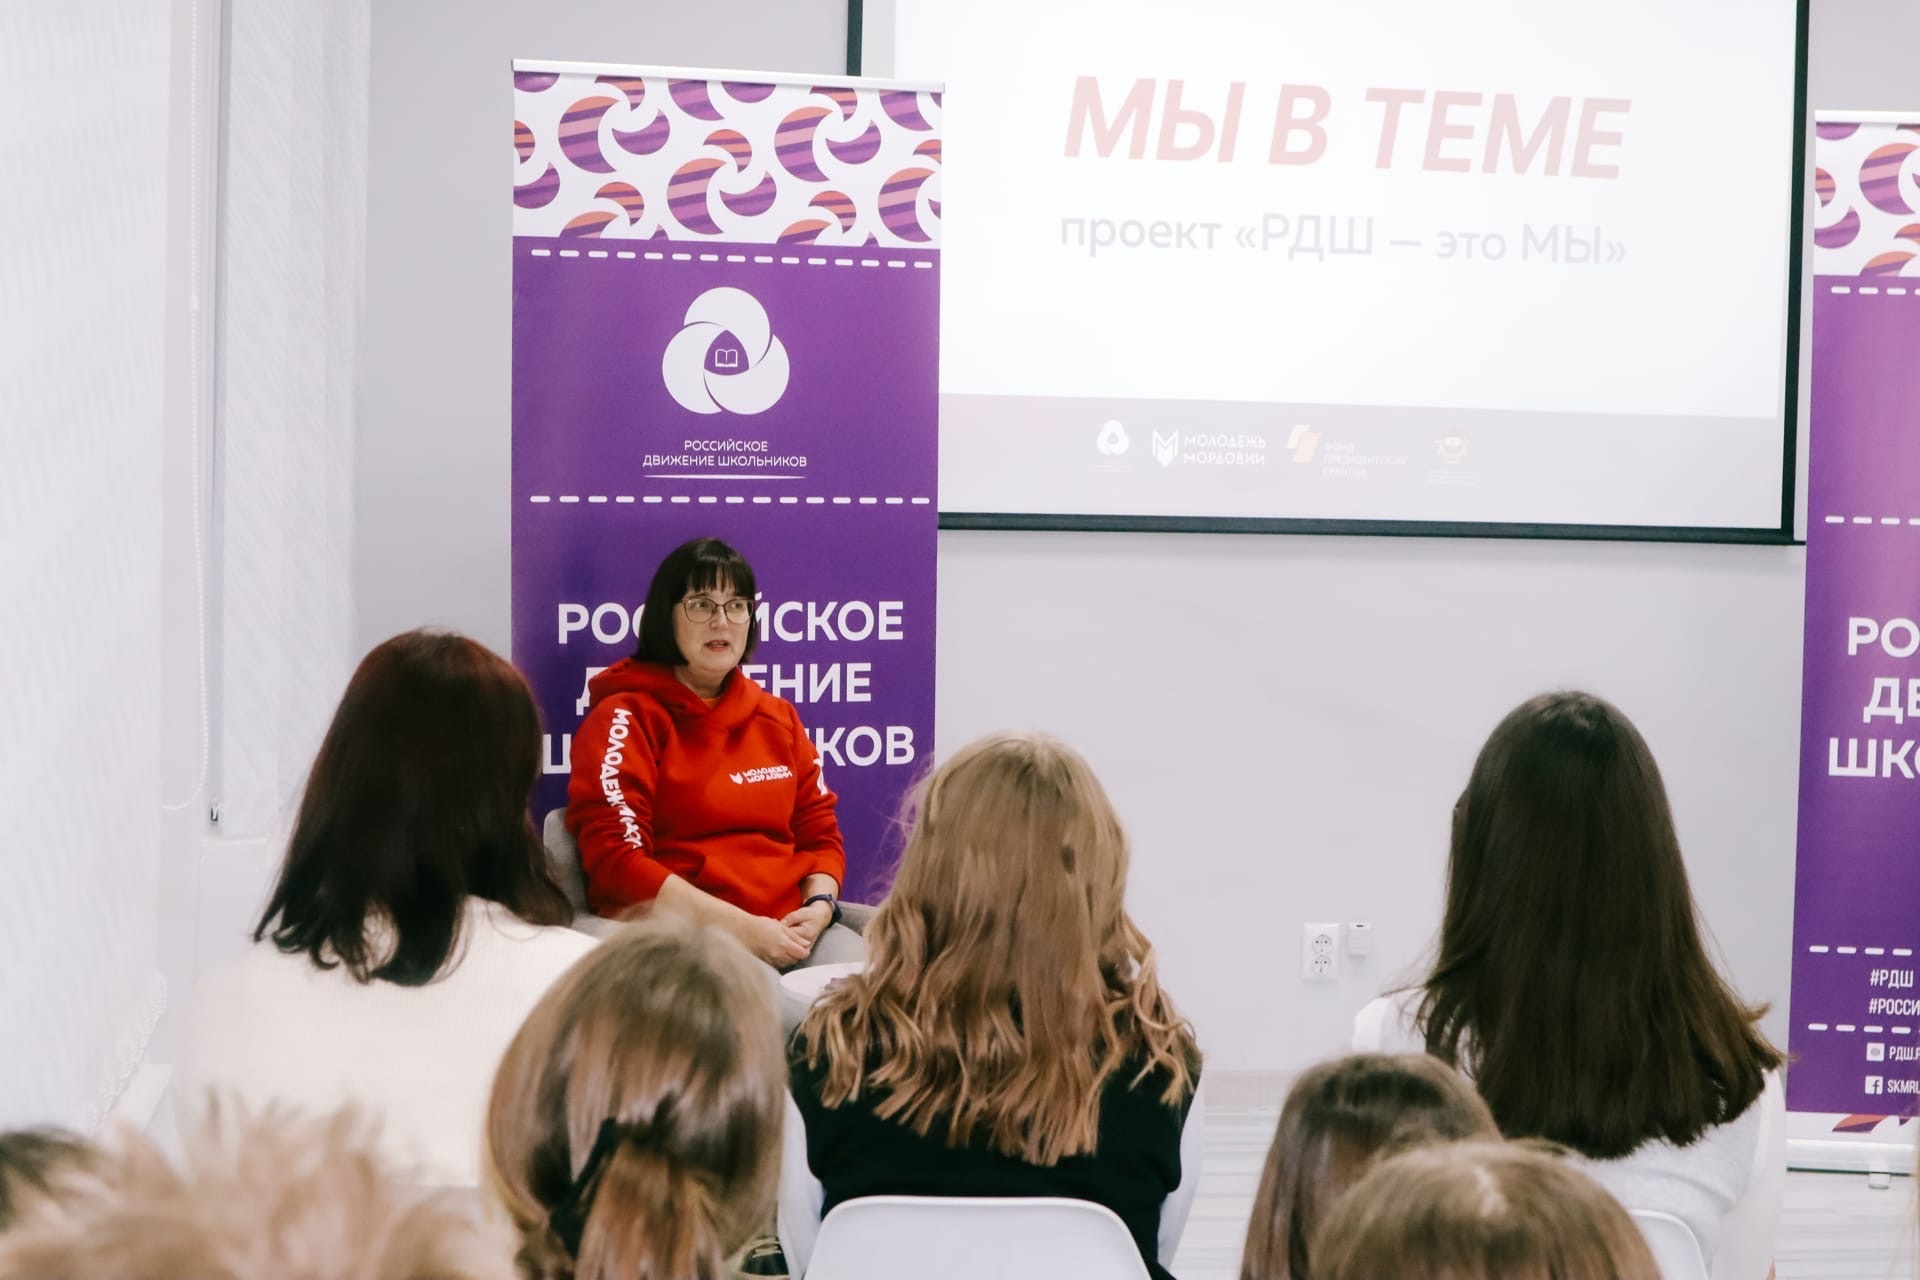 Связь трёх поколений: в Республике Мордовия состоялась третья встреча «Мы в теме»